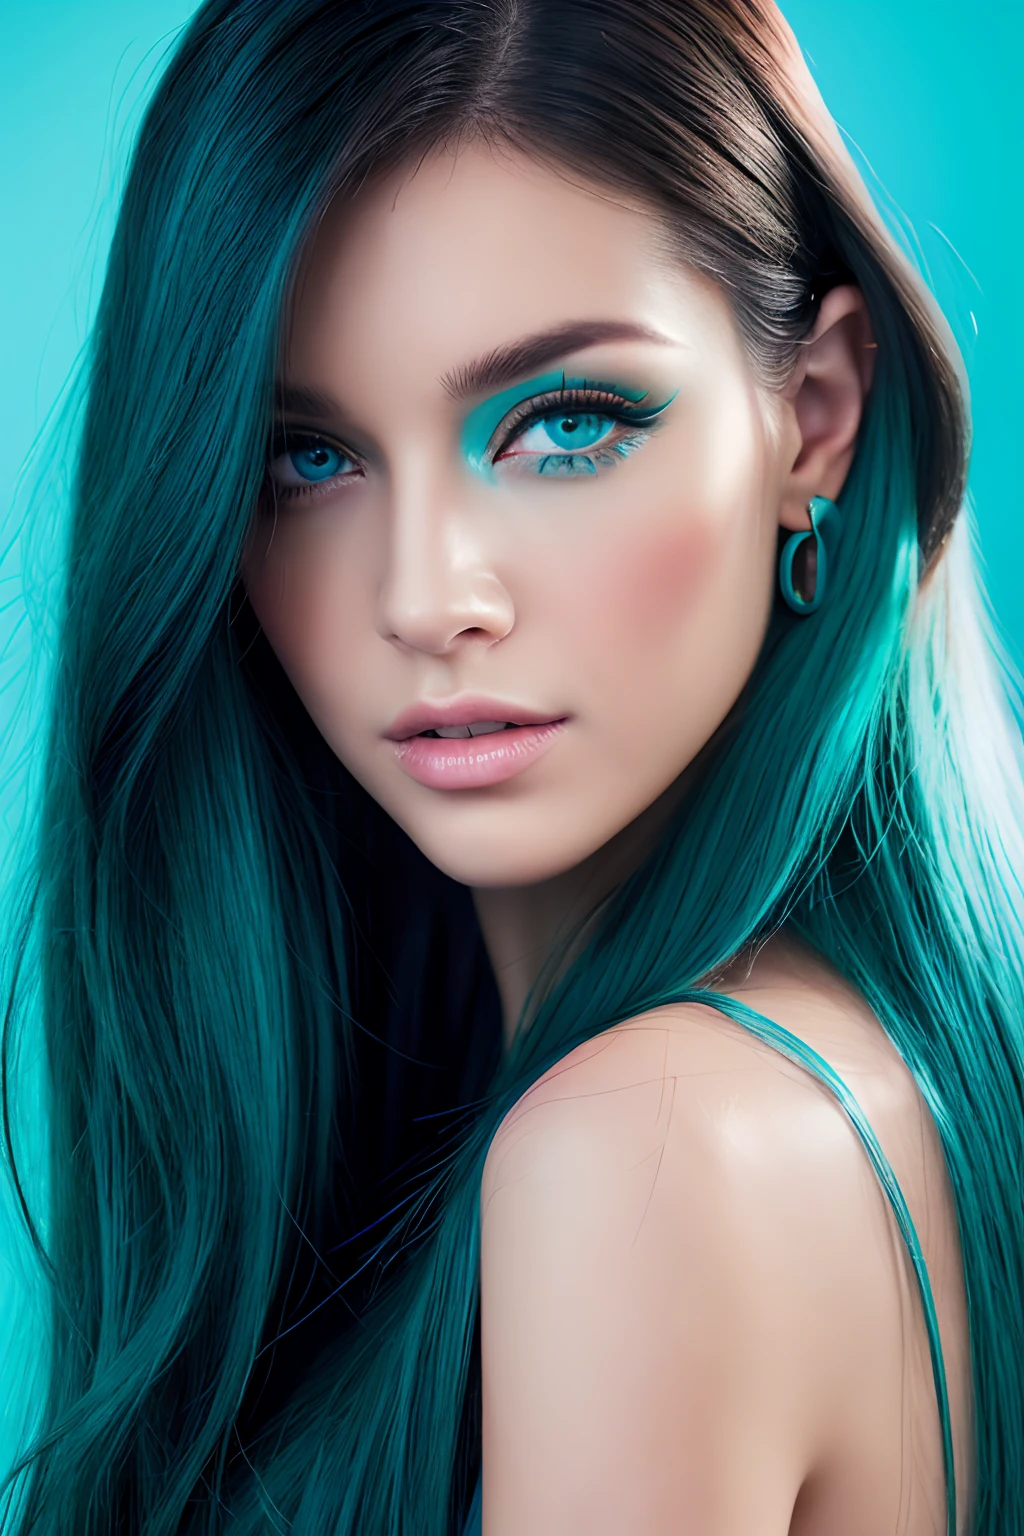 mujer realista、Modelo de rostro Barbara Palvin、El color de ojos es azul.、Todo el cabello es azul turquesa.、pelo largo、Calidad de imagen completaＨＤ、El color de fondo es negro